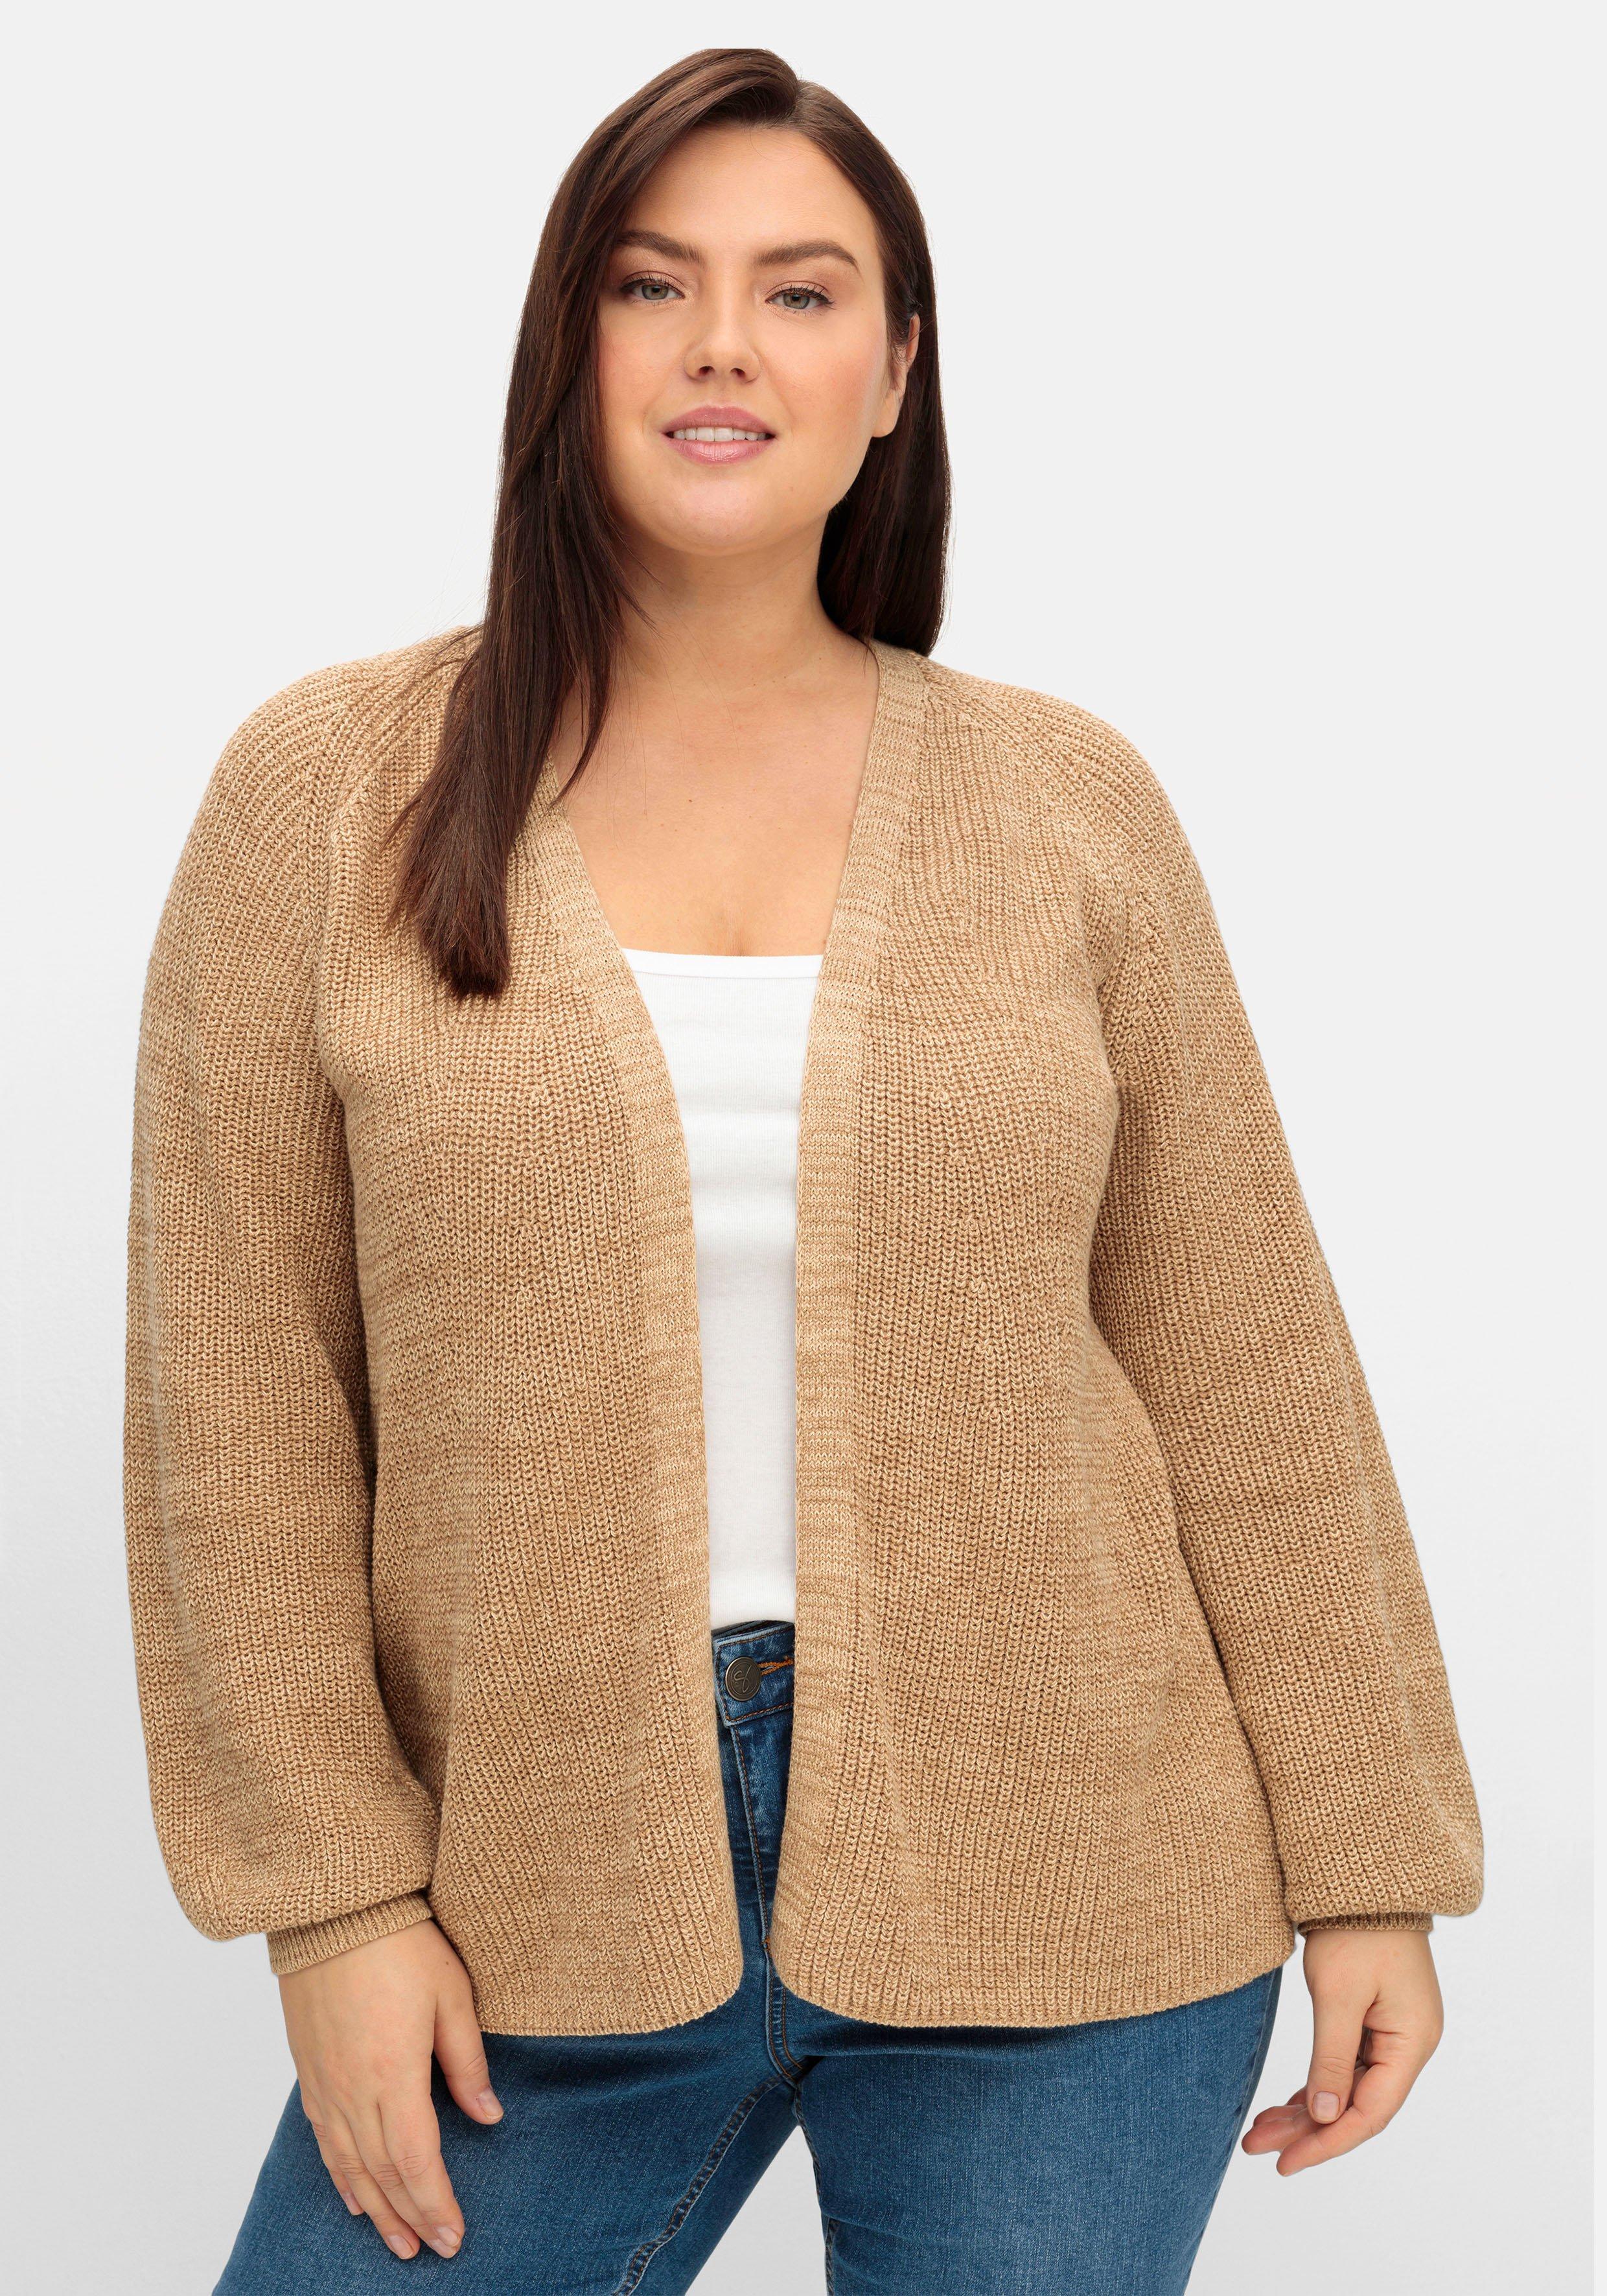 Damen Pullover › braun Größe sheego Strickjacken | & ♥ Mode große Size Größen 46 Plus